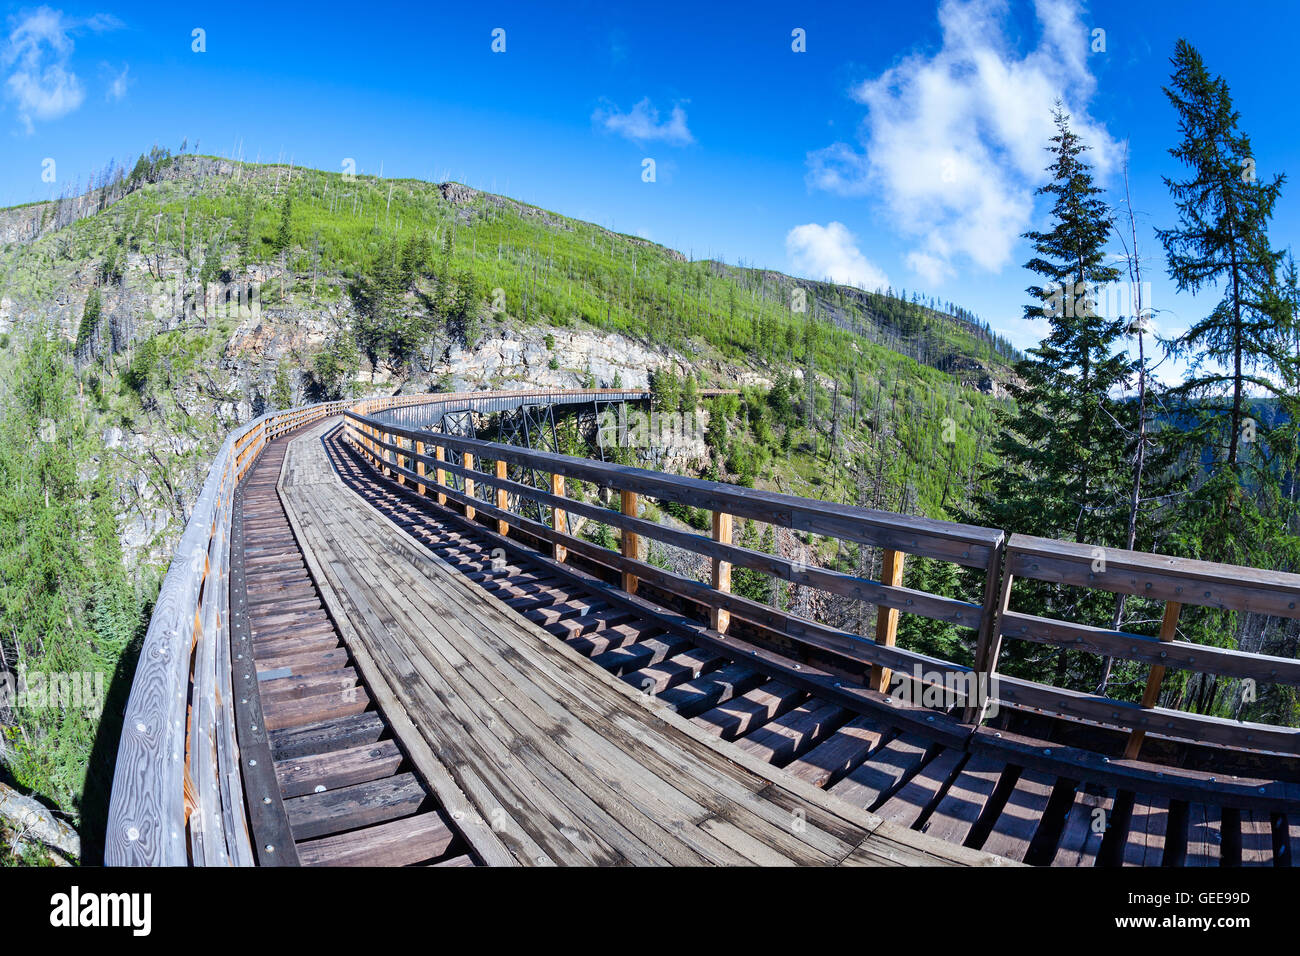 Originariamente uno dei 19 legno tralicci ferroviaria costruita nei primi anni del novecento in Myra Canyon, BC, il luogo è ora un parco pubblico con bi Foto Stock